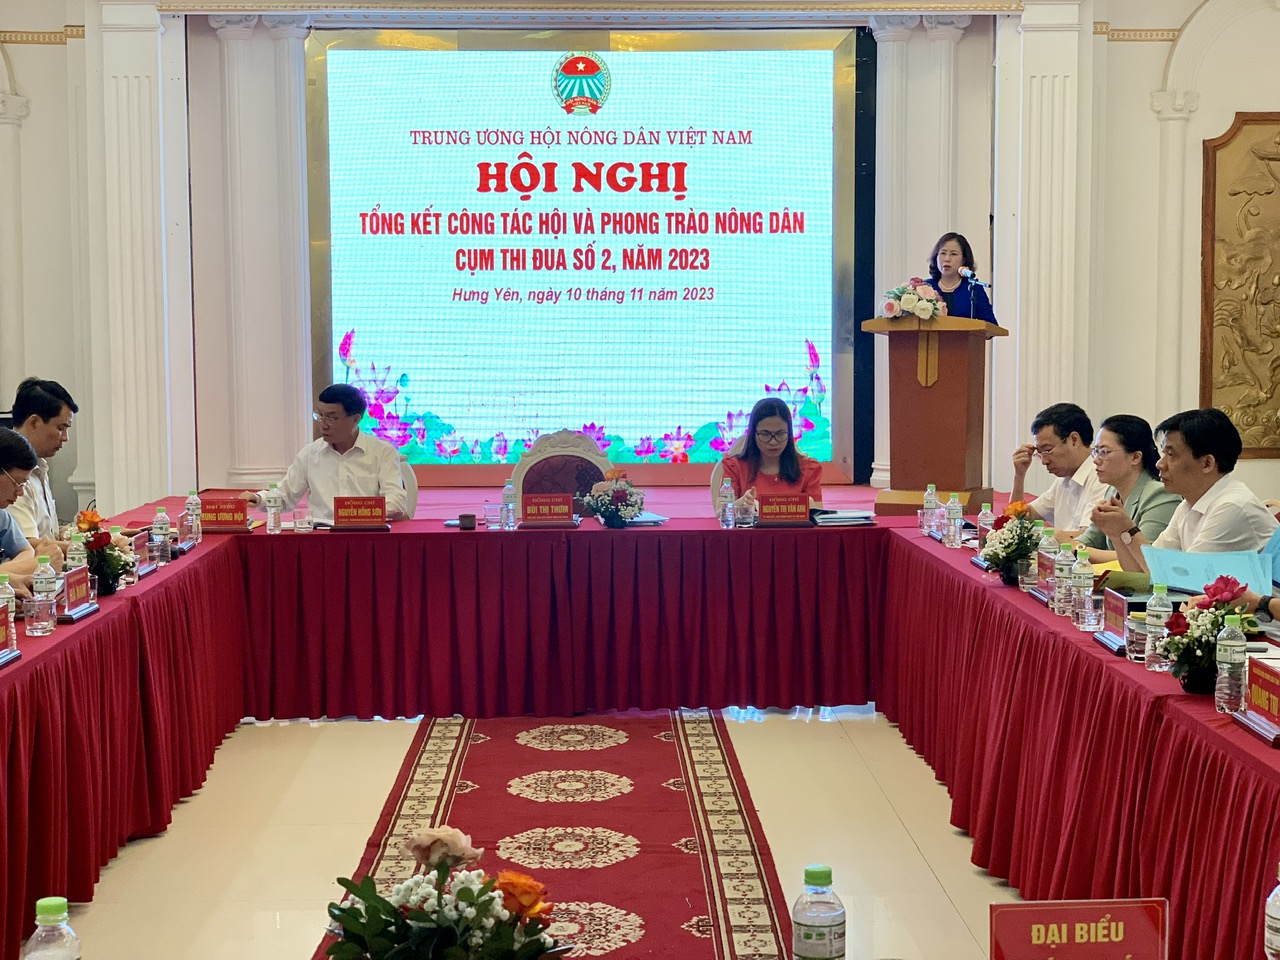 Phó Chủ tịch Hội NDVN Bùi Thị Thơm chủ trì hội nghị tổng kết cụm thi đua số 2 tổ chức tại Hưng Yên- Ảnh 2.